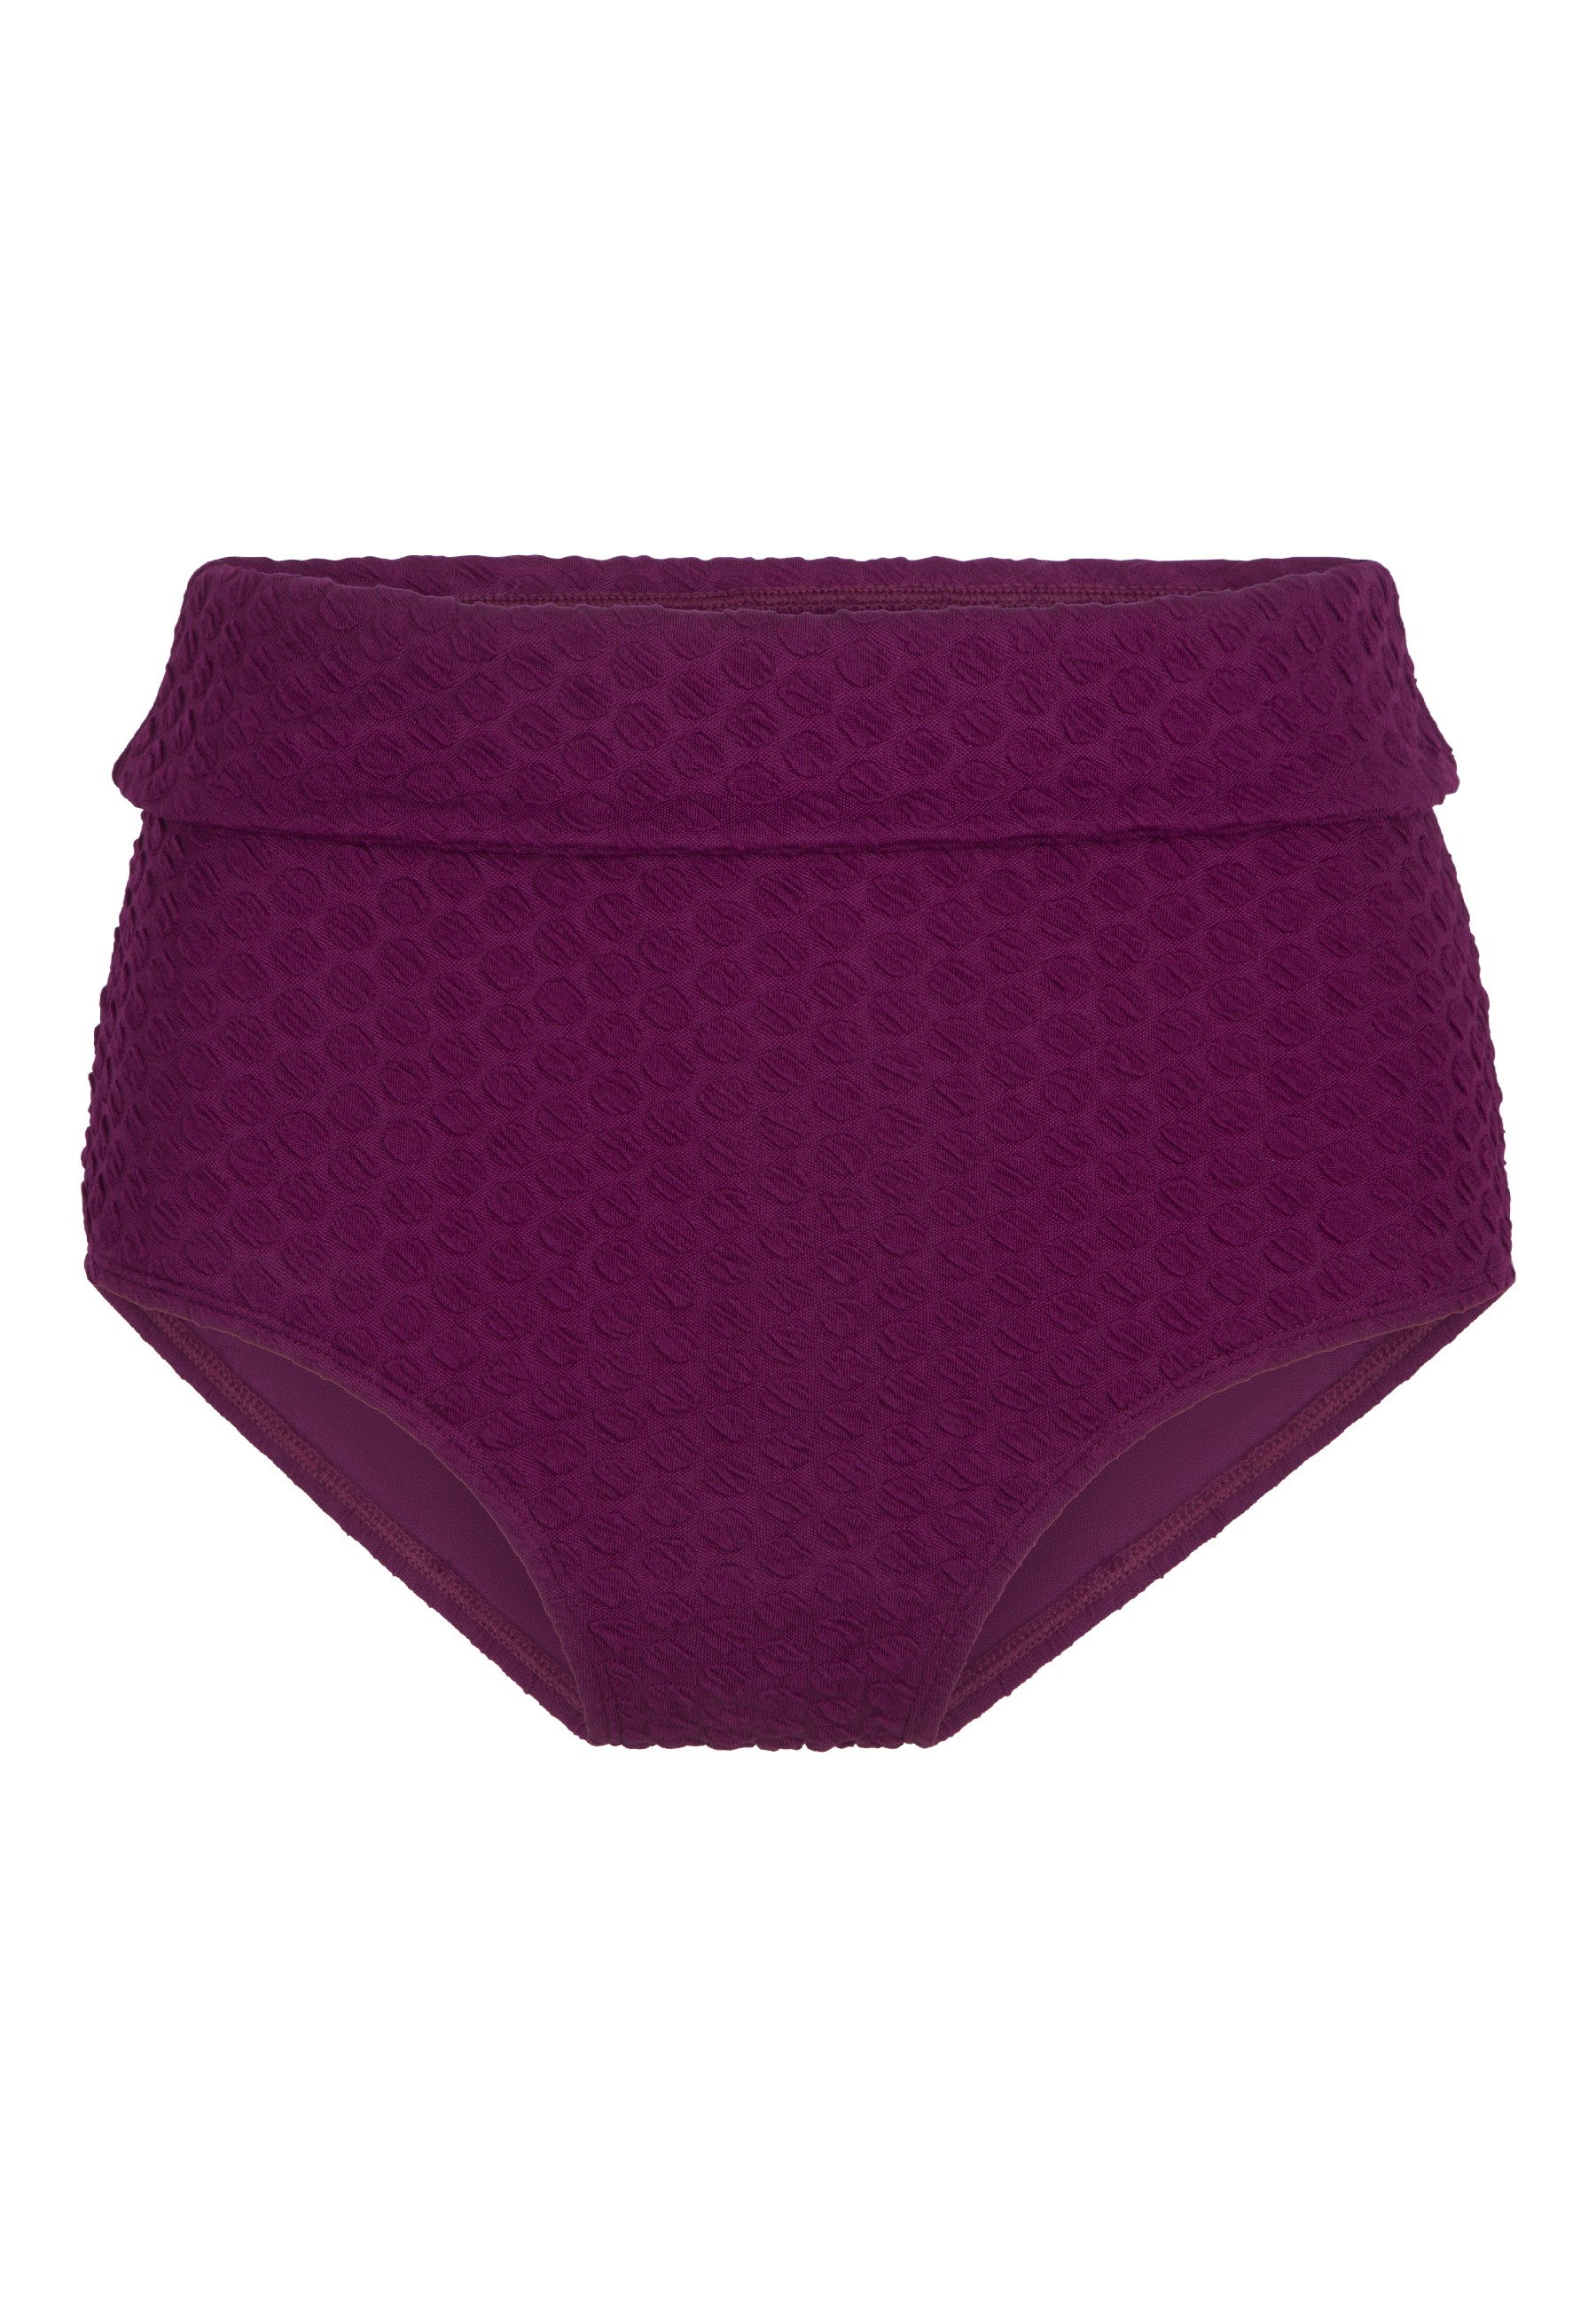 Плавки бикини Linga Dore Slip Taille, фиолетовый